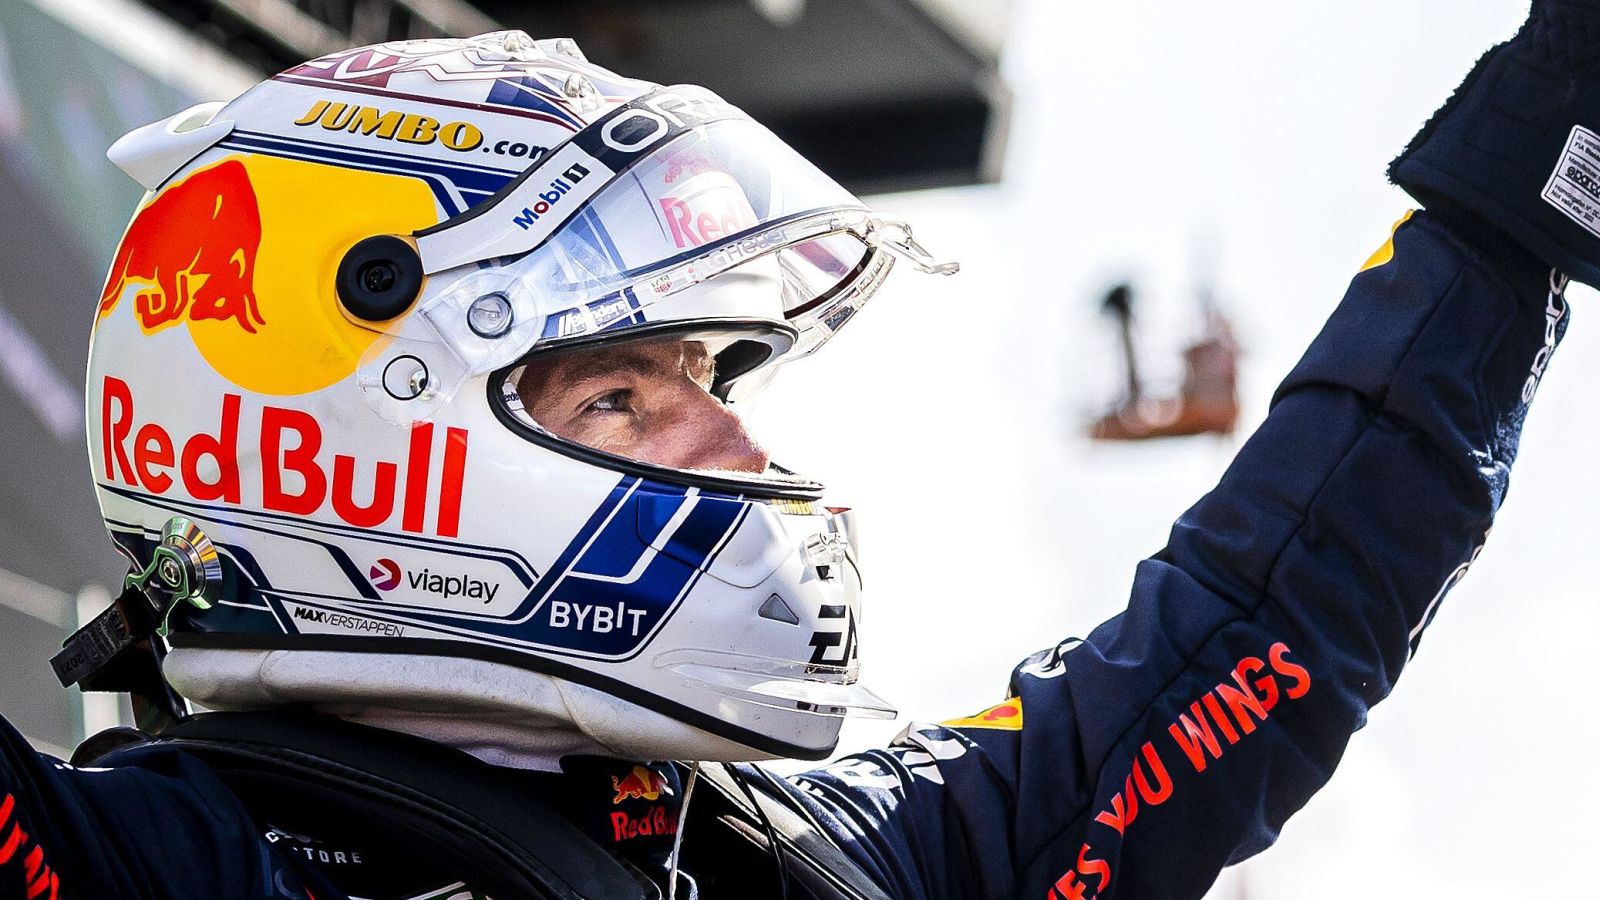 米ax Verstappen (Red Bull) celebrates after setting pole position for the Dutch Grand Prix at Zandvoort.